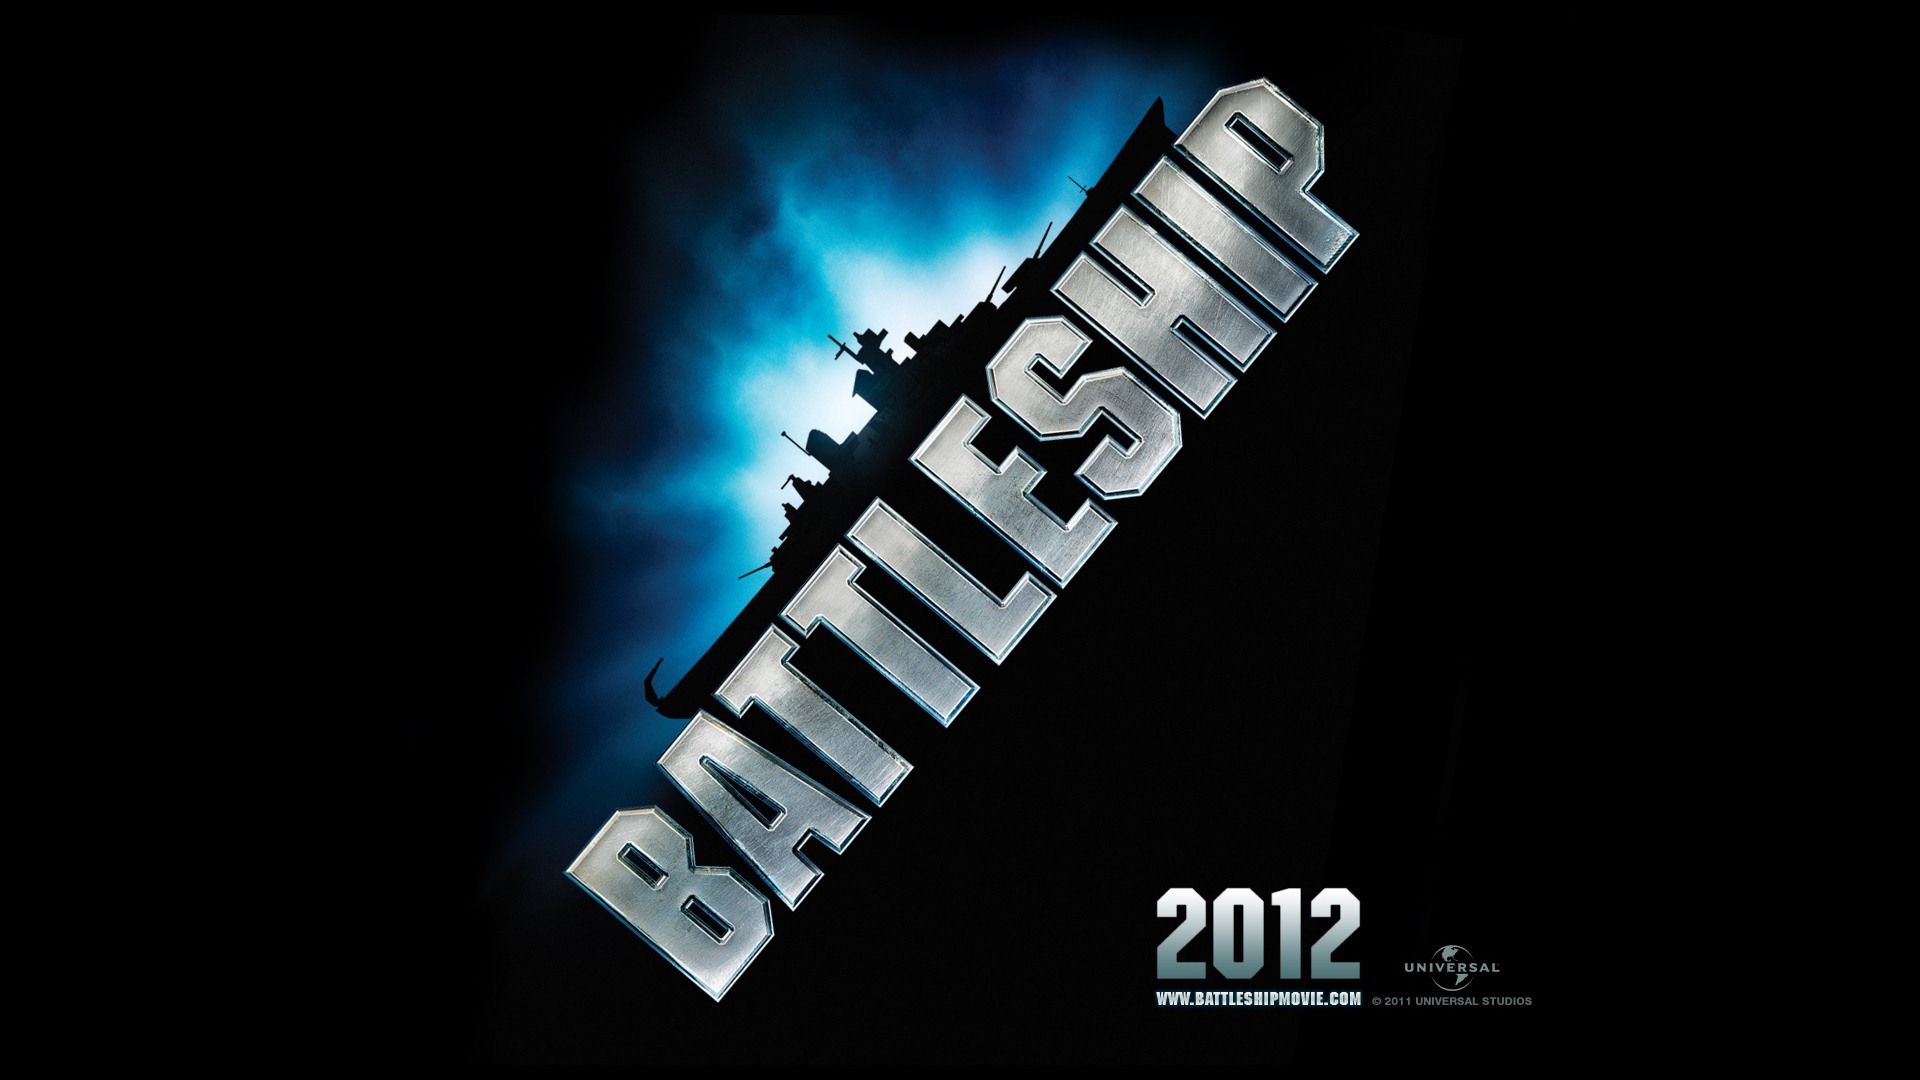 Battleship 2012 HD wallpapers #2 - 1920x1080